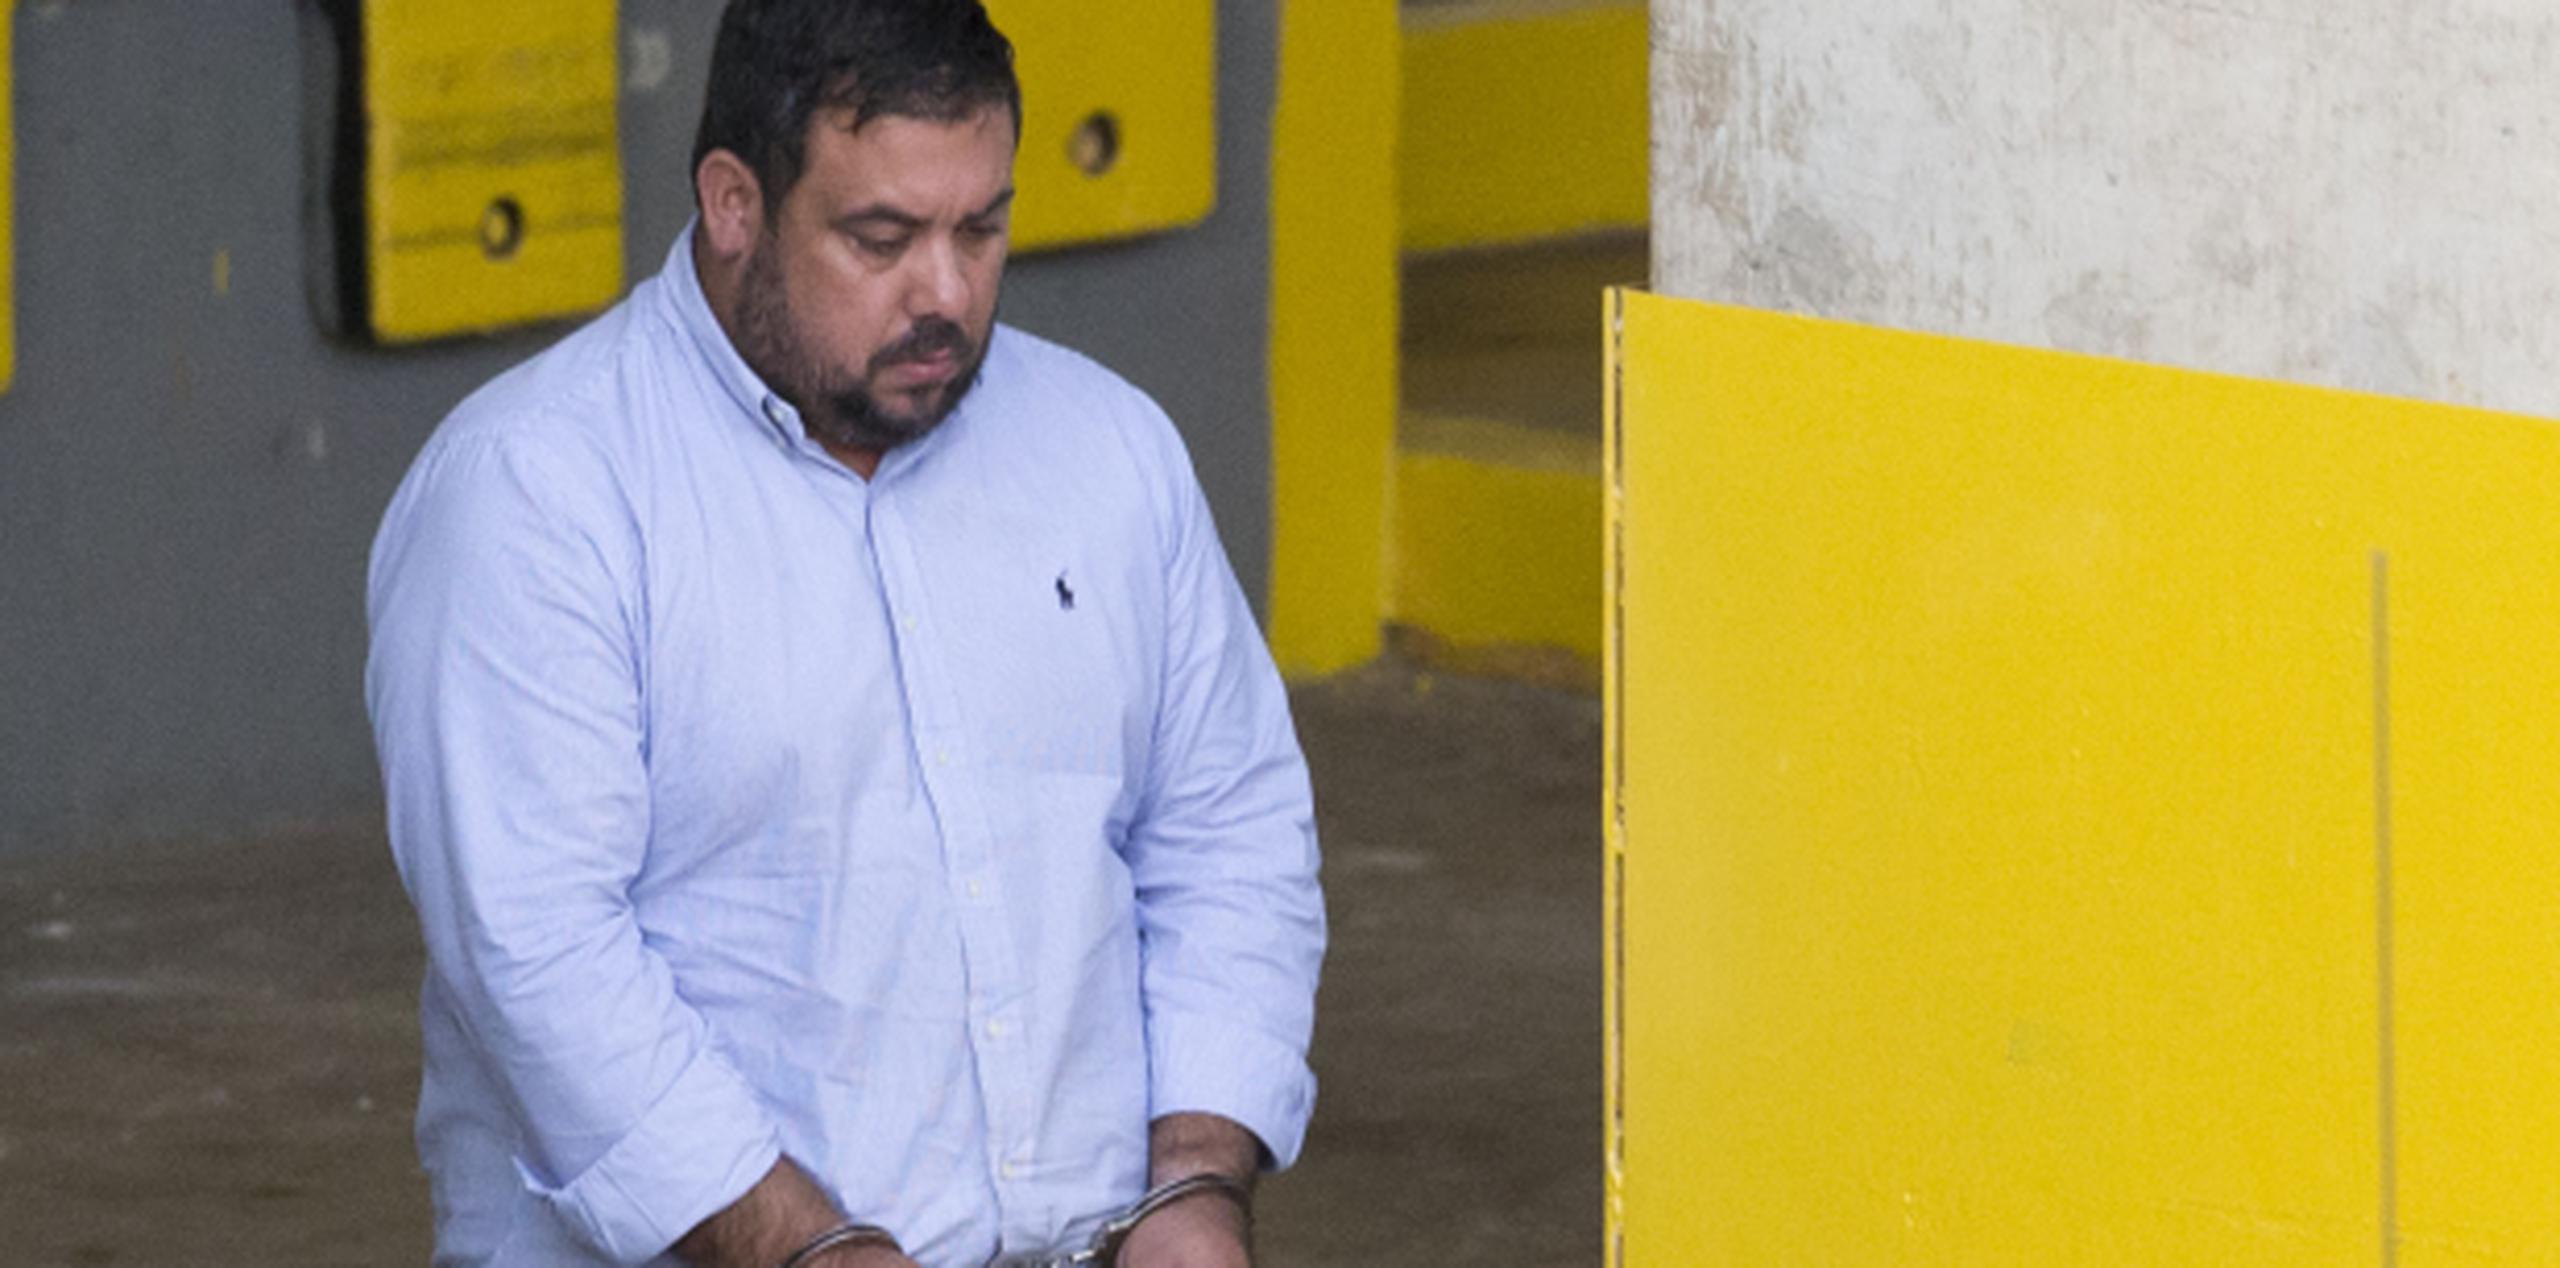 Ya Hernández Pérez hizo alegación de culpabilidad en febrero pasado a cambio de una sentencia recomendada de entre 70 y 87 meses de prisión. Fuentes indican que está cooperando con las autoridades. (Archivo)